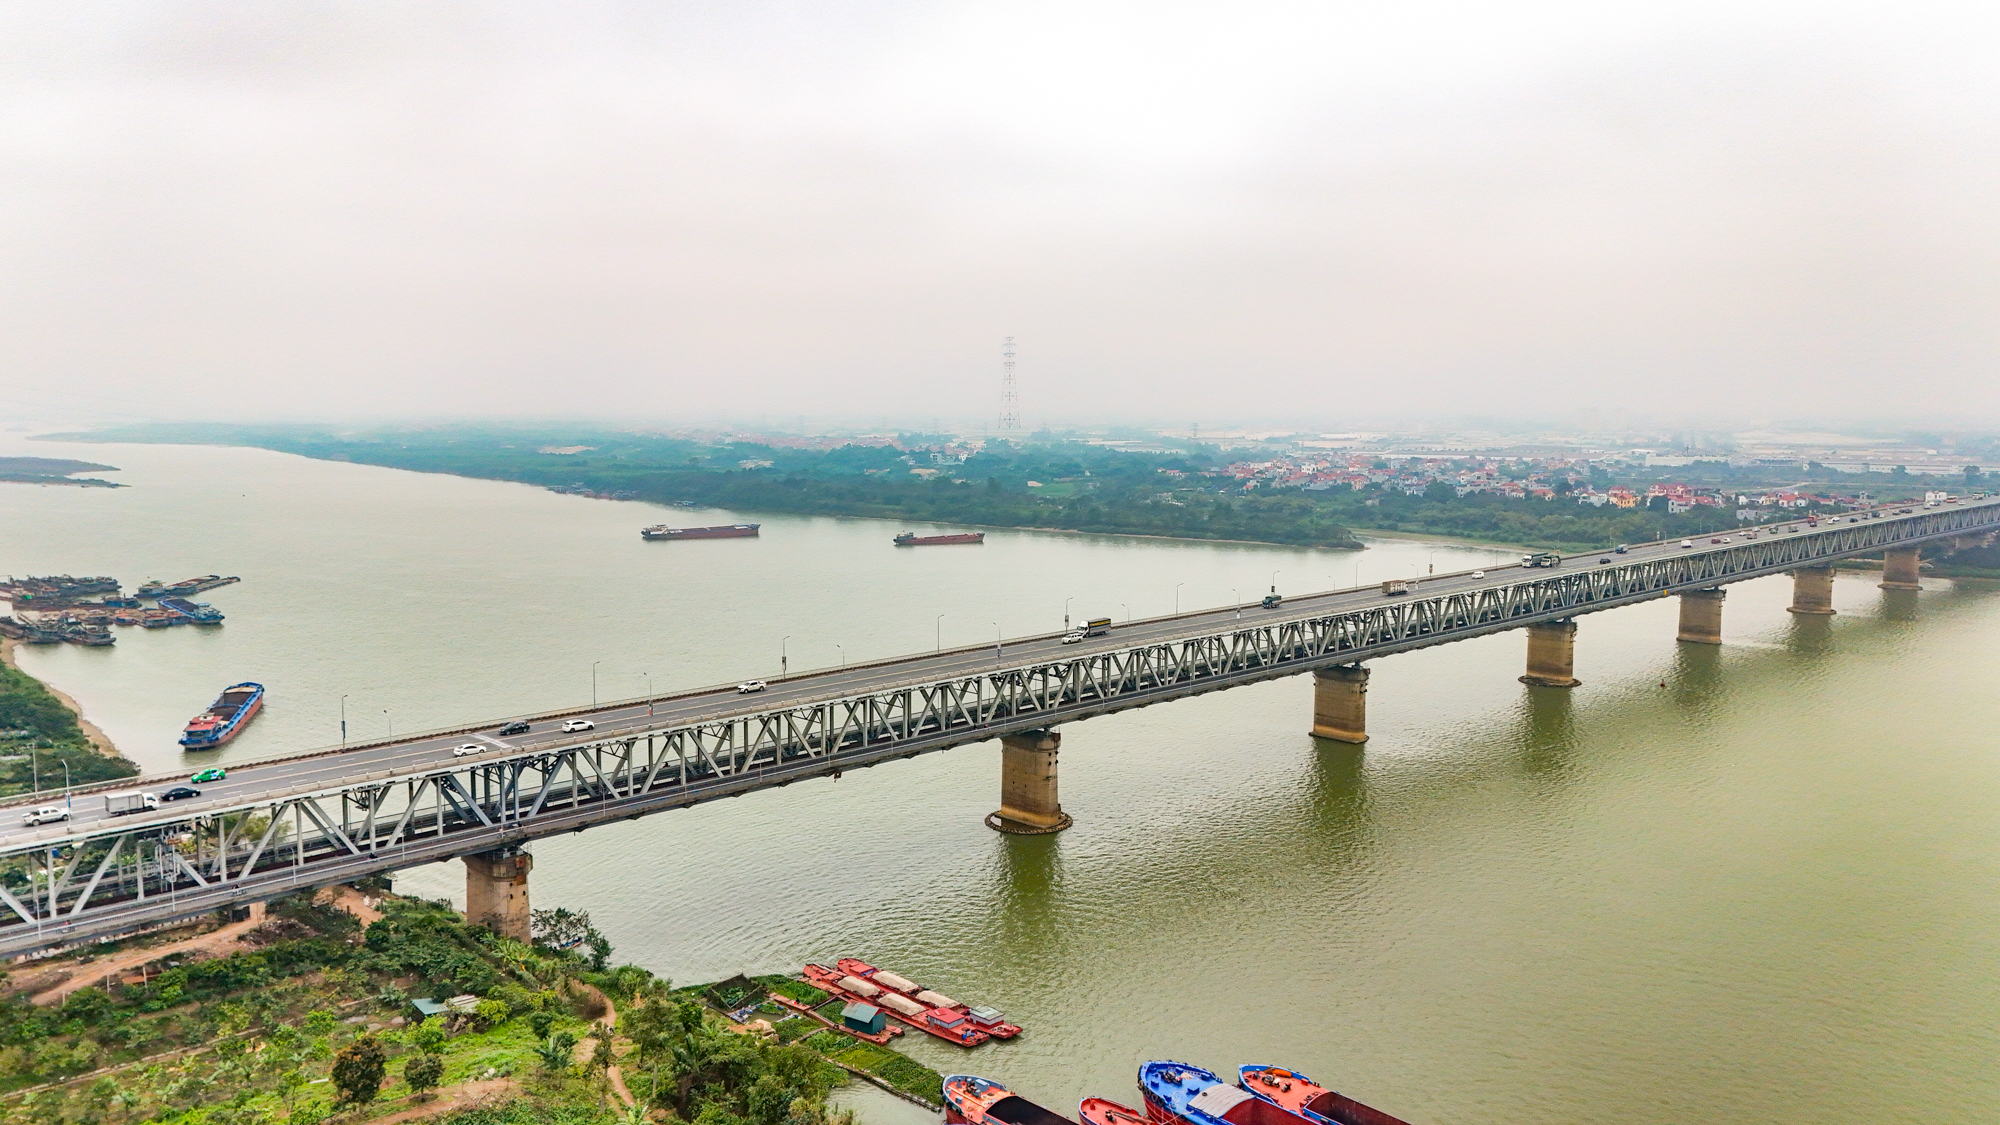 Cầu vượt sông 2 tầng duy nhất, thời gian thi công lâu nhất ở Hà Nội- Ảnh 1.